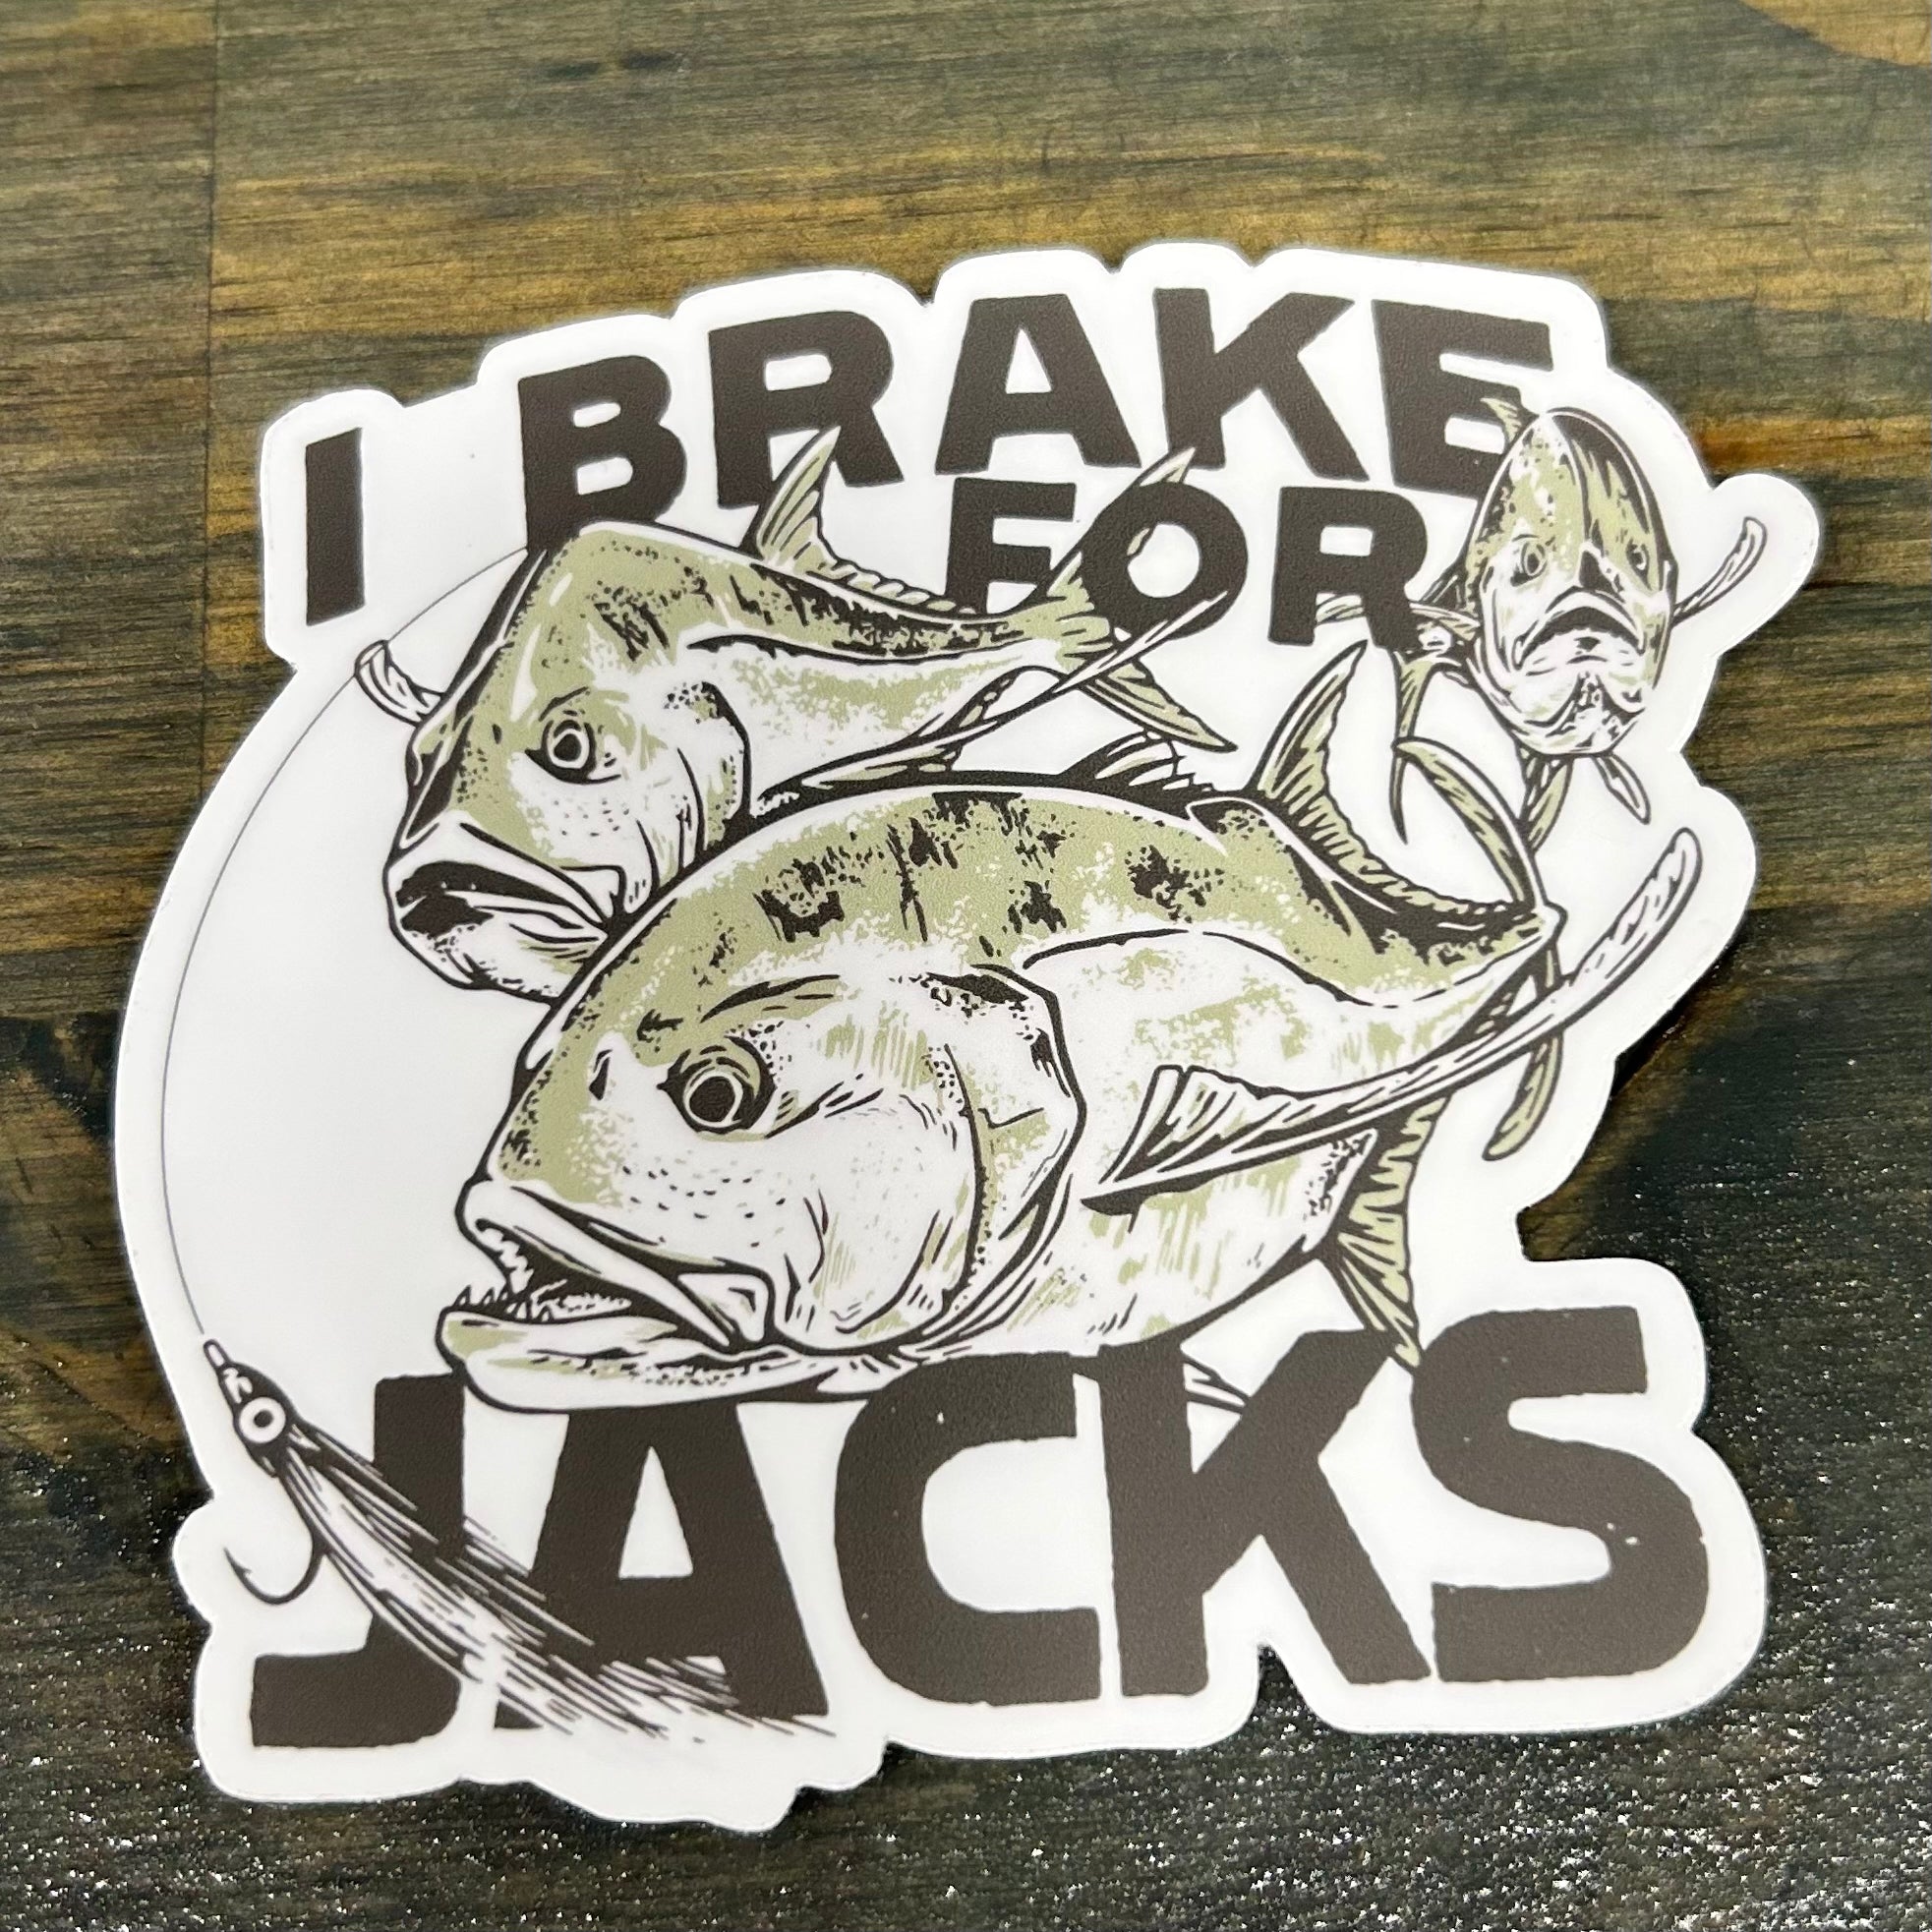 “I brake for jacks” Sticker